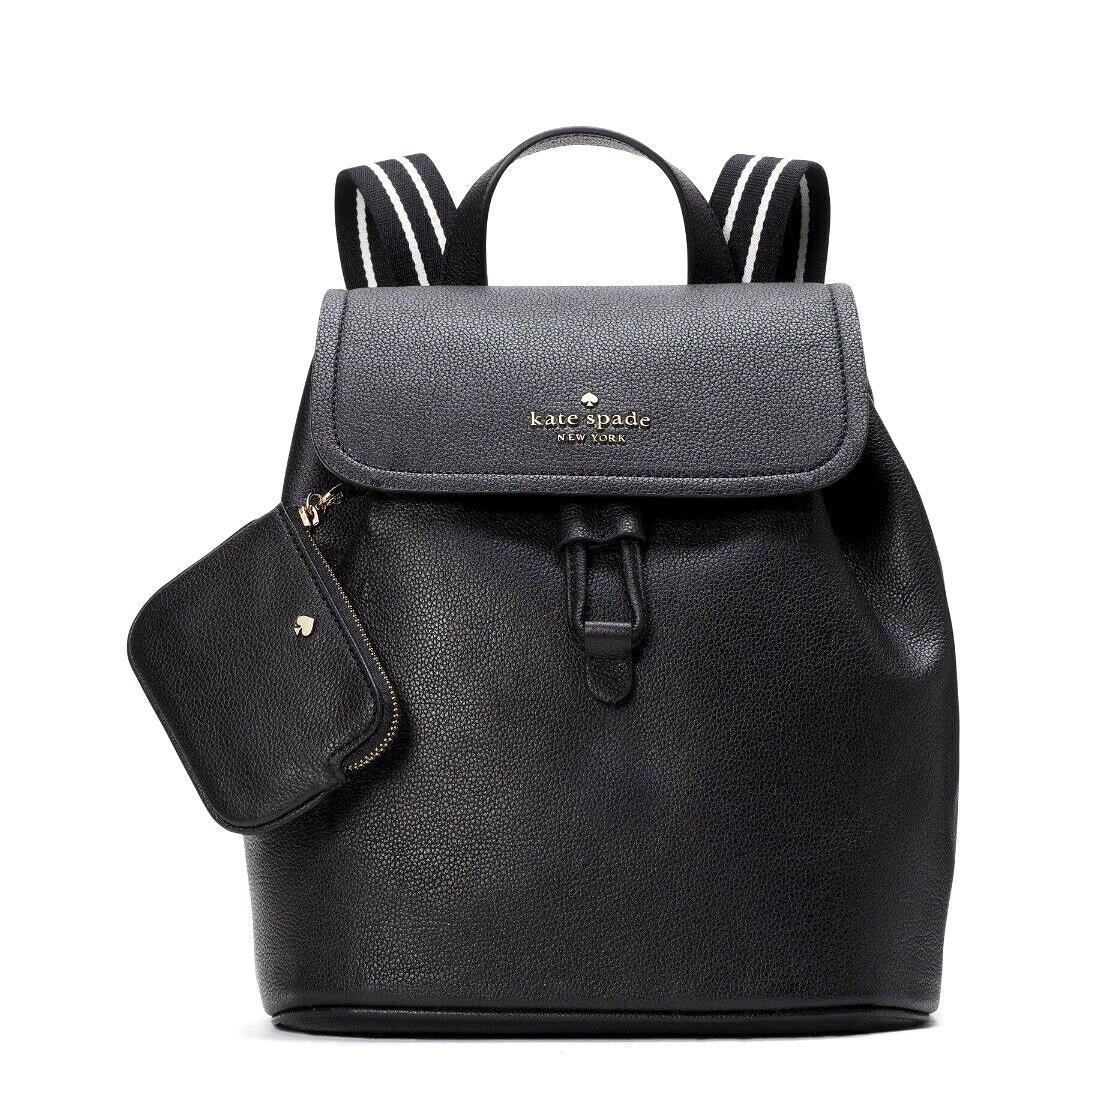 New Kate Spade Rosie Medium Flap Backpack Black